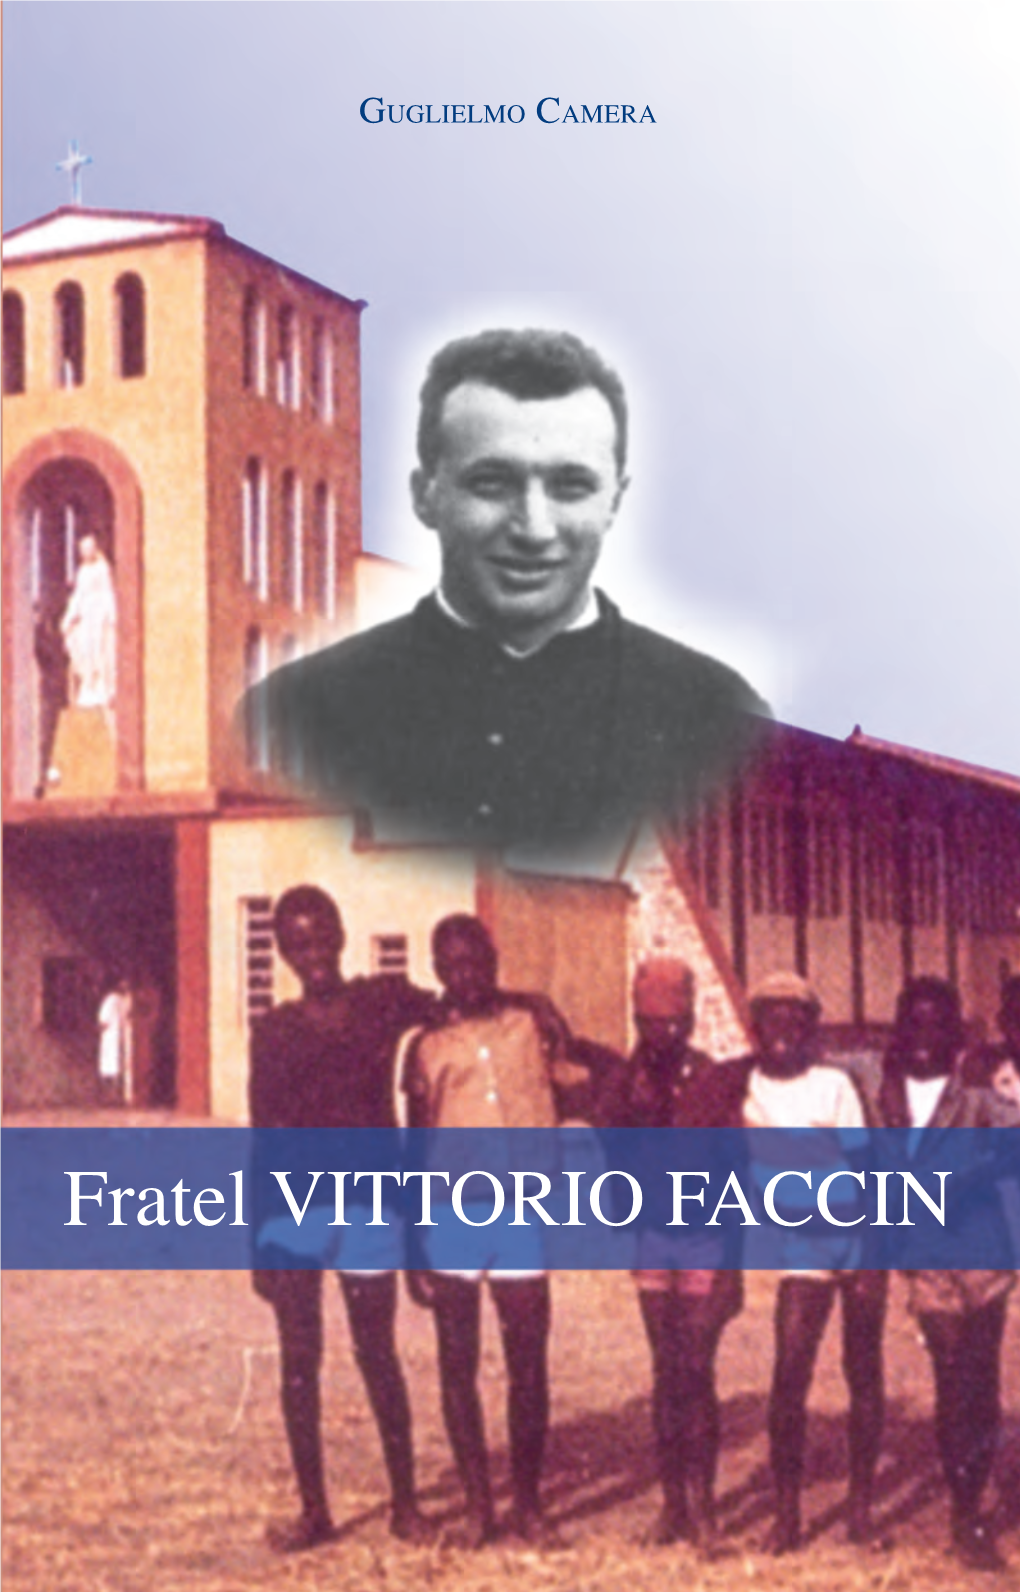 Fratel VITTORIO FACCIN Testimone Diamorefinoalmartirio Di Guidomariaconforti